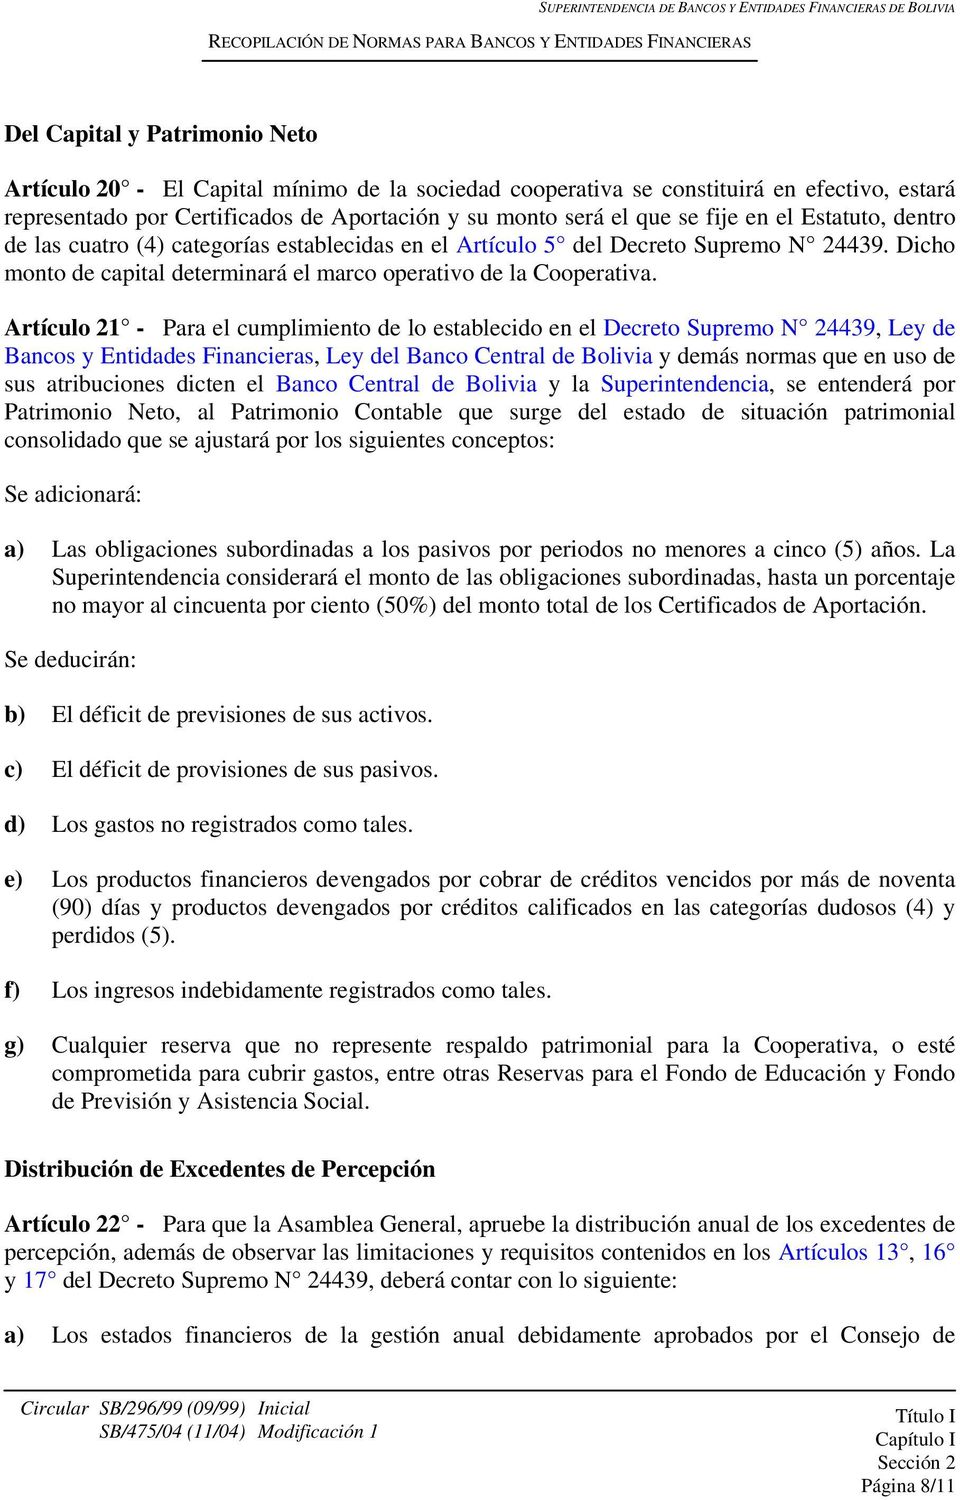 Artículo 21 - Para el cumplimiento de lo establecido en el Decreto Supremo N 24439, Ley de Bancos y Entidades Financieras, Ley del Banco Central de Bolivia y demás normas que en uso de sus